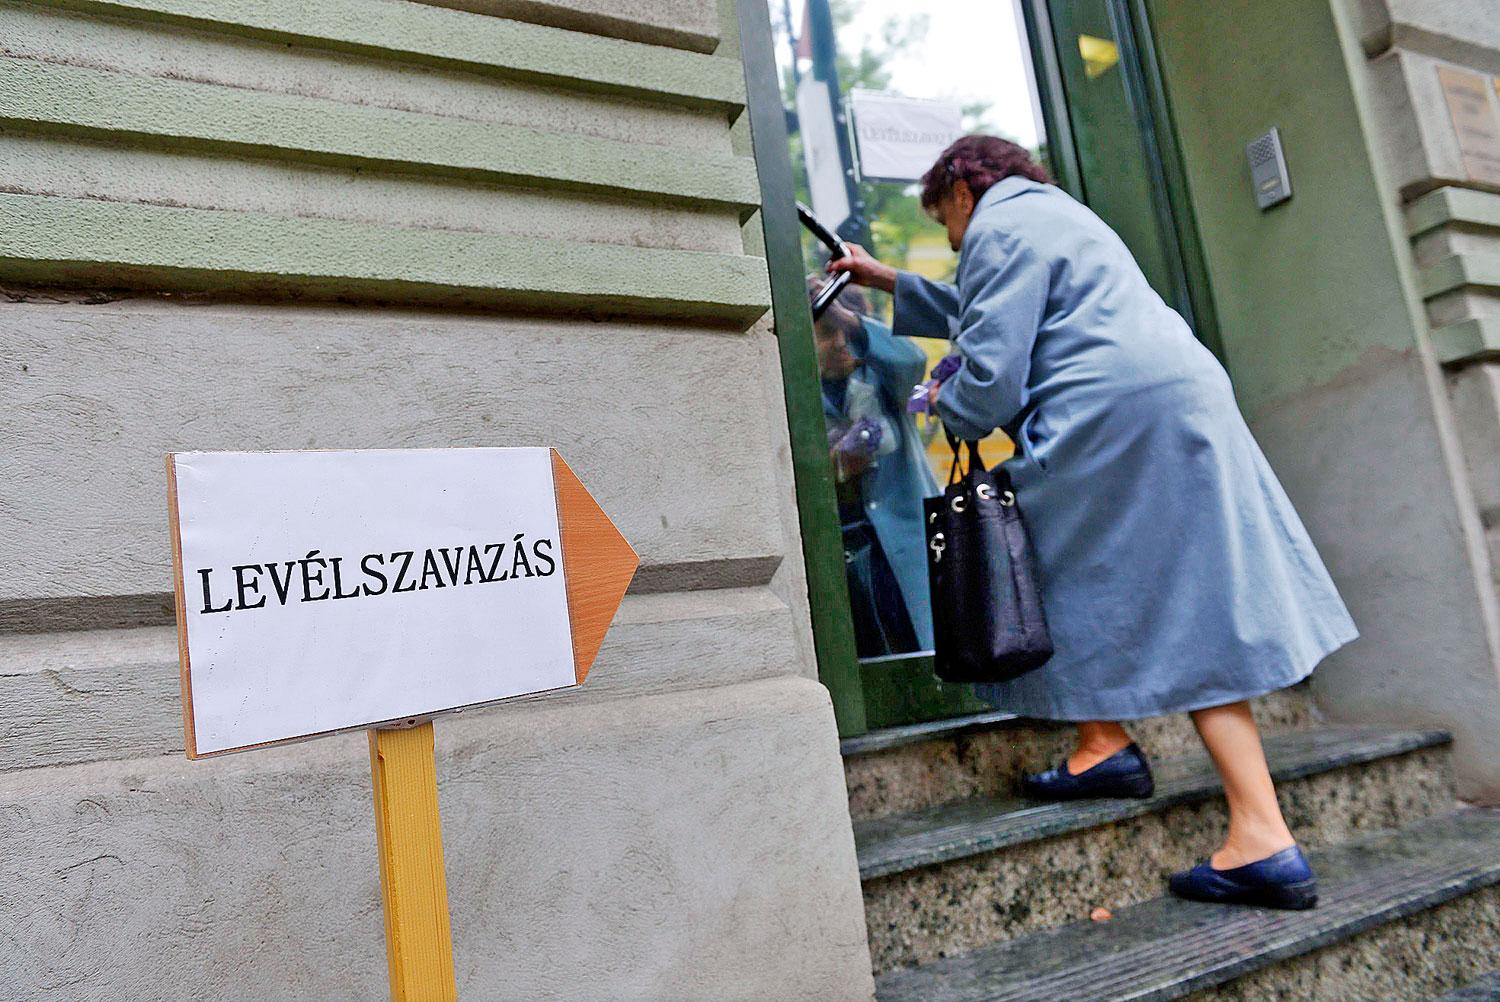 Levélszavazatát leadni készülő nő érkezik a szabadkai magyar főkonzulátusra. Magasan van a küszöb 